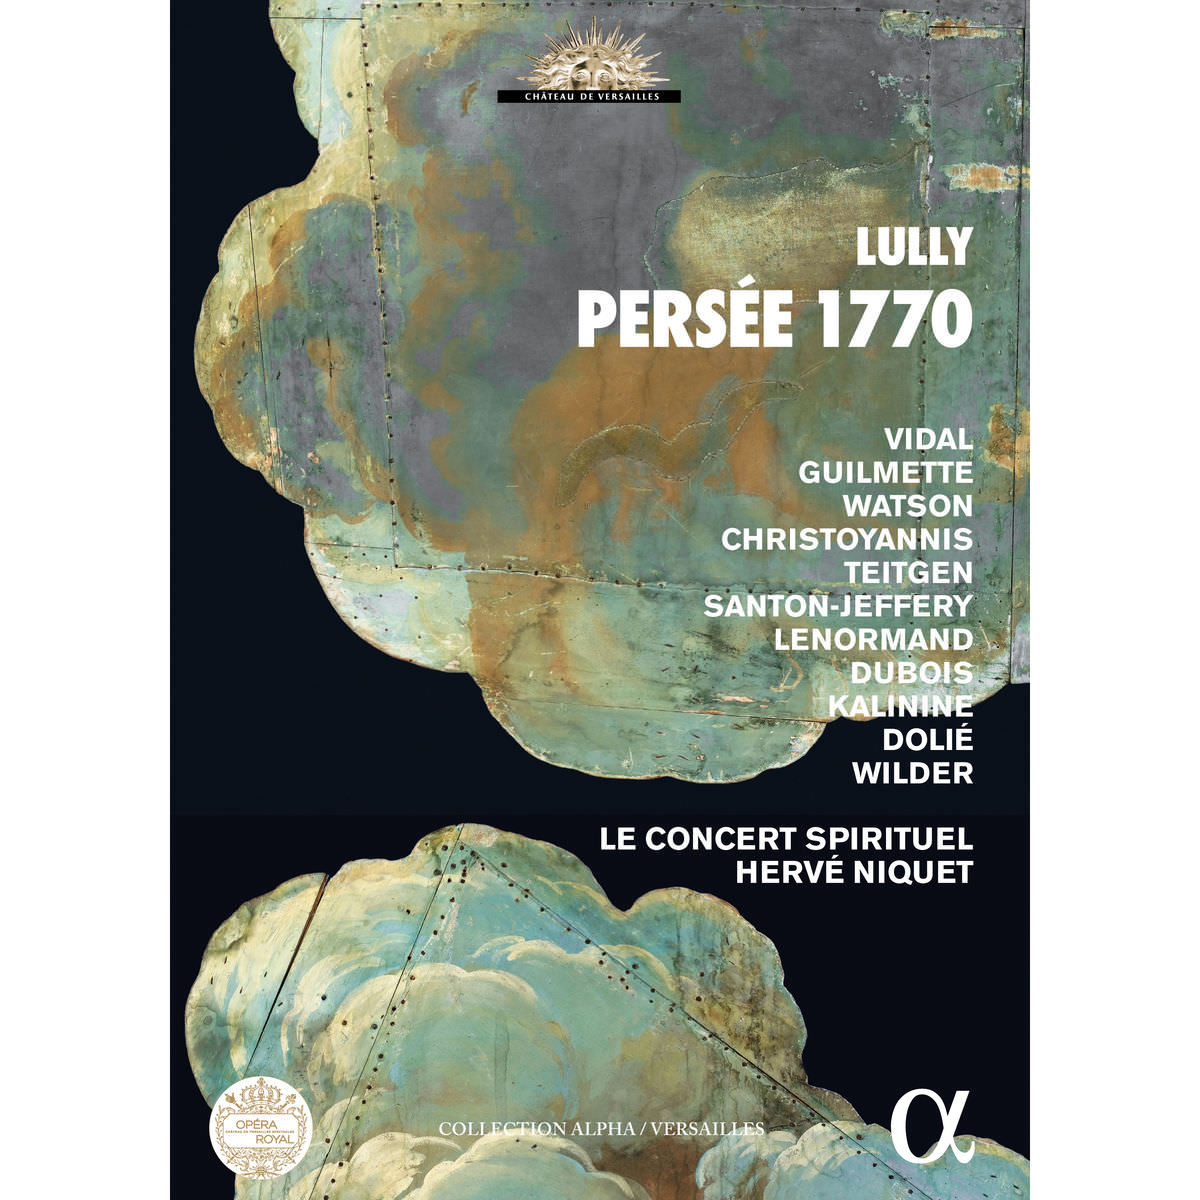 Le Concert Spirituel & Herve Niquet - Lully: Persee 1770 (Collection "Chateau de Versailles") (2017) [FLAC 24bit/88.2kHz]